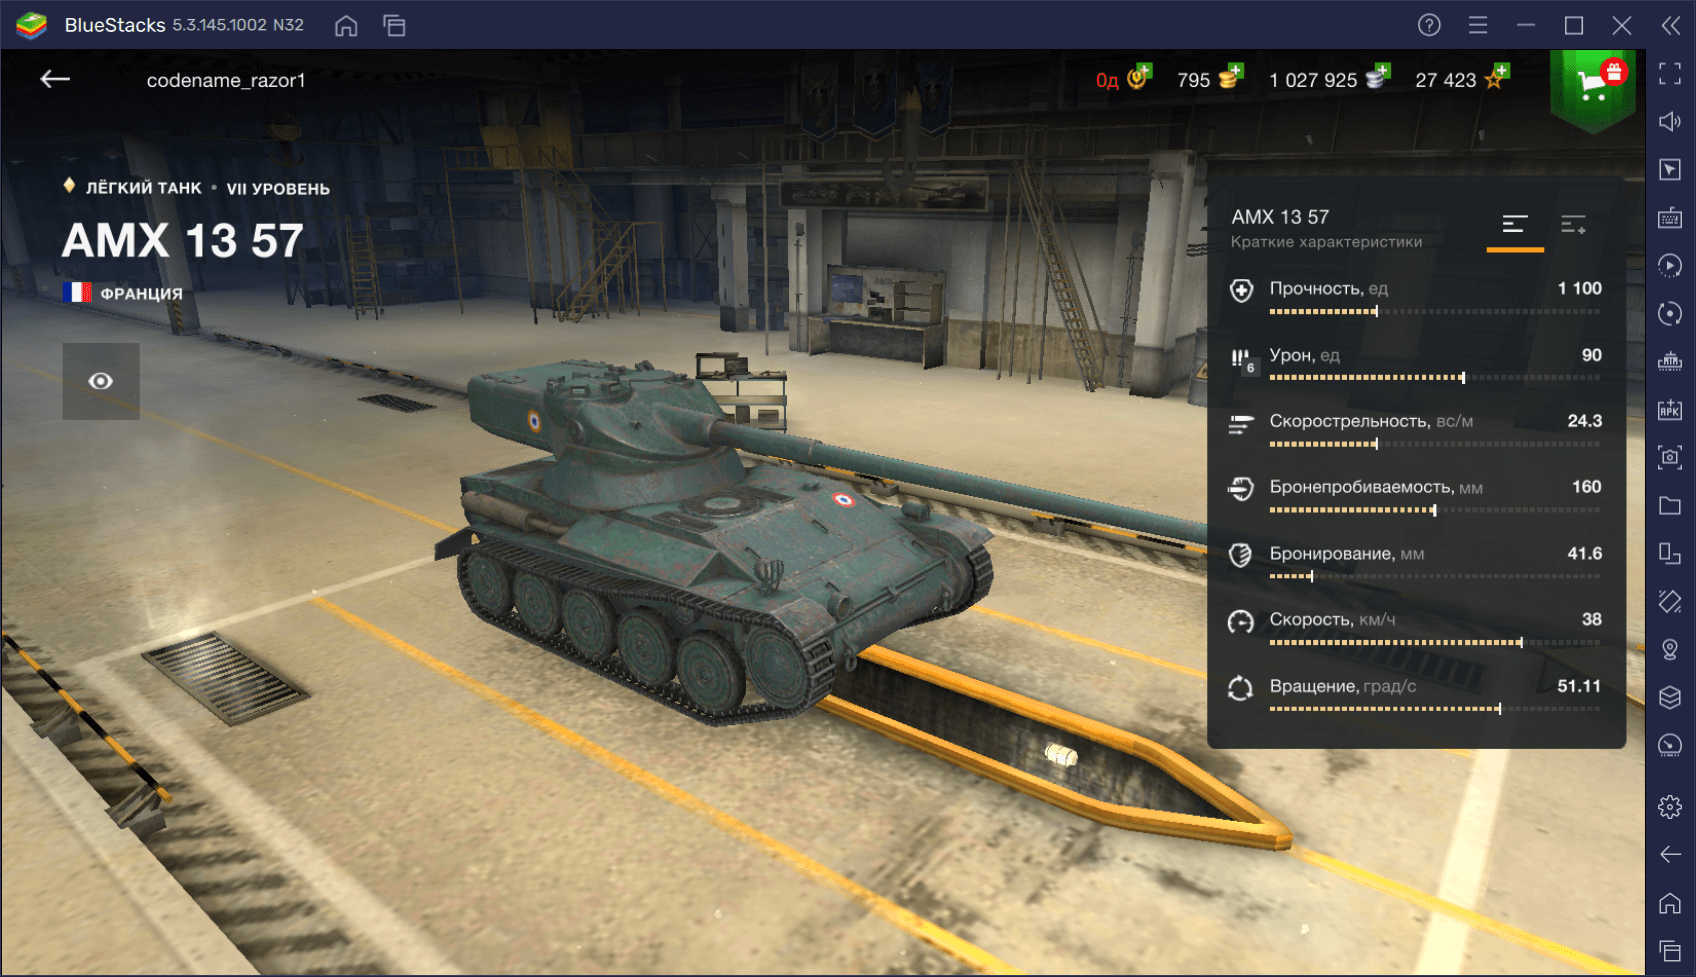 Премиумный средний танк AMX 13 57 в World of Tanks Blitz. Обзор параметров, достоинств и тактик игры